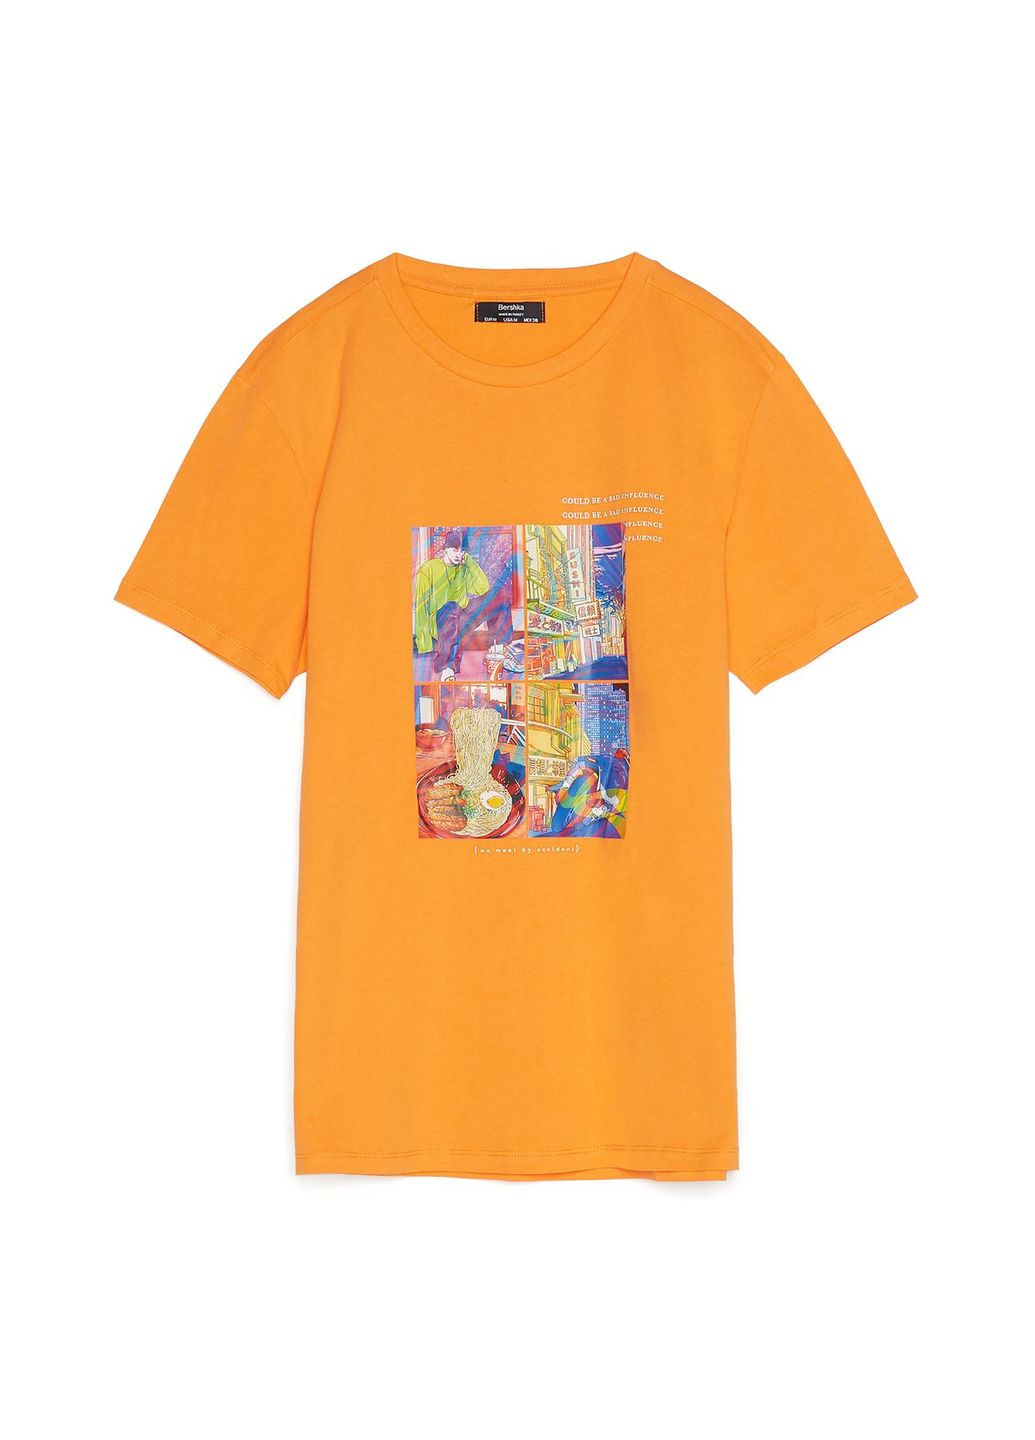 Оранжевая футболка Bershka Print 2417/922